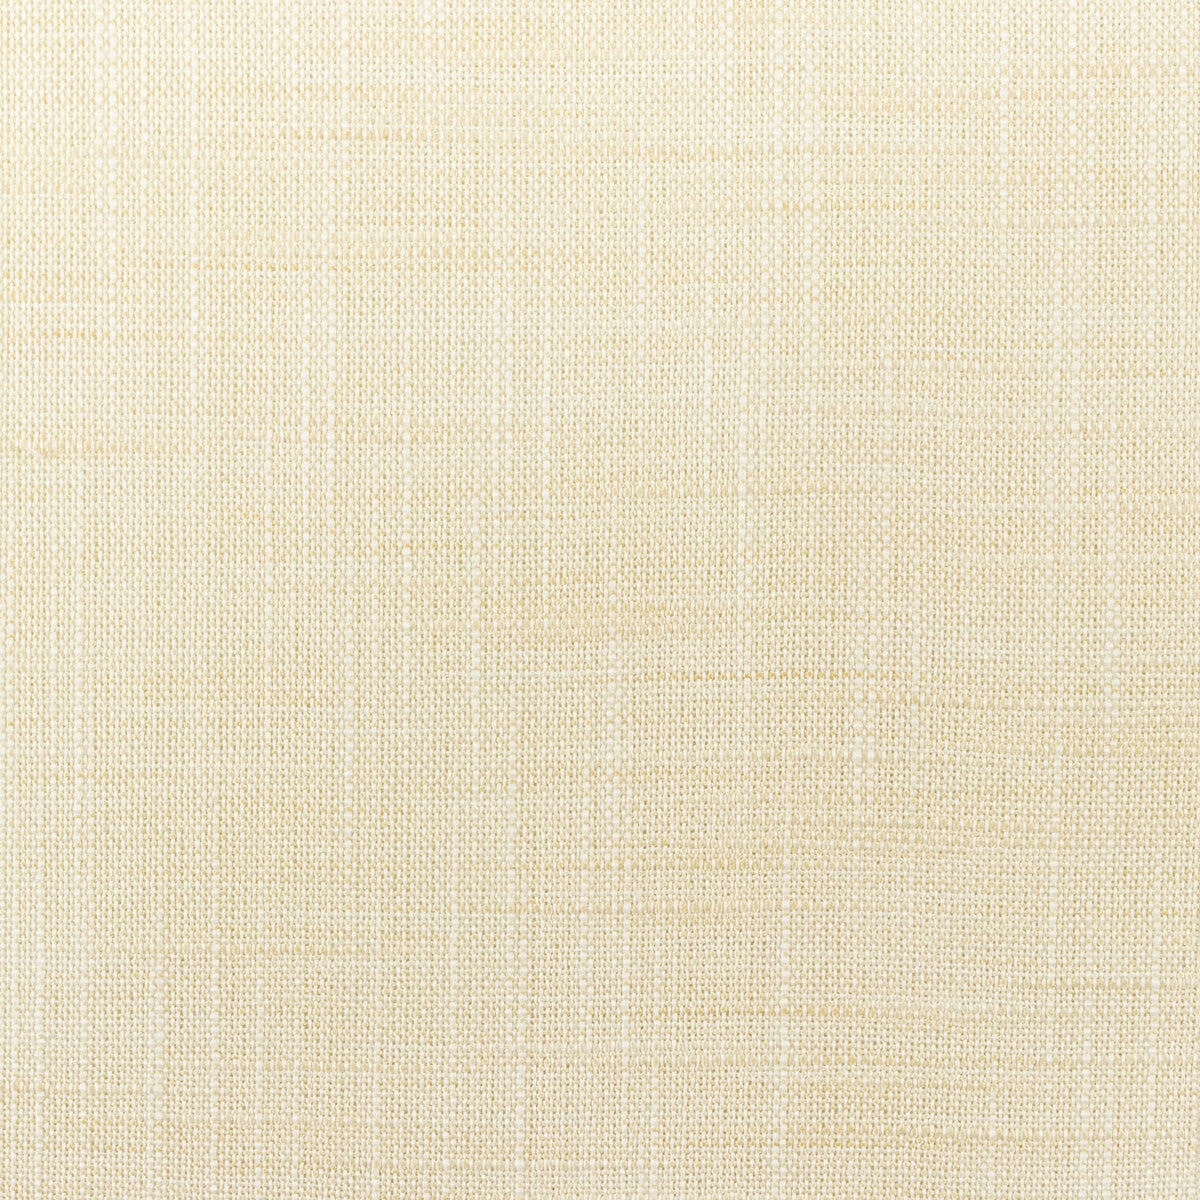 Kravet Basics fabric in 4668-111 color - pattern 4668.111.0 - by Kravet Basics